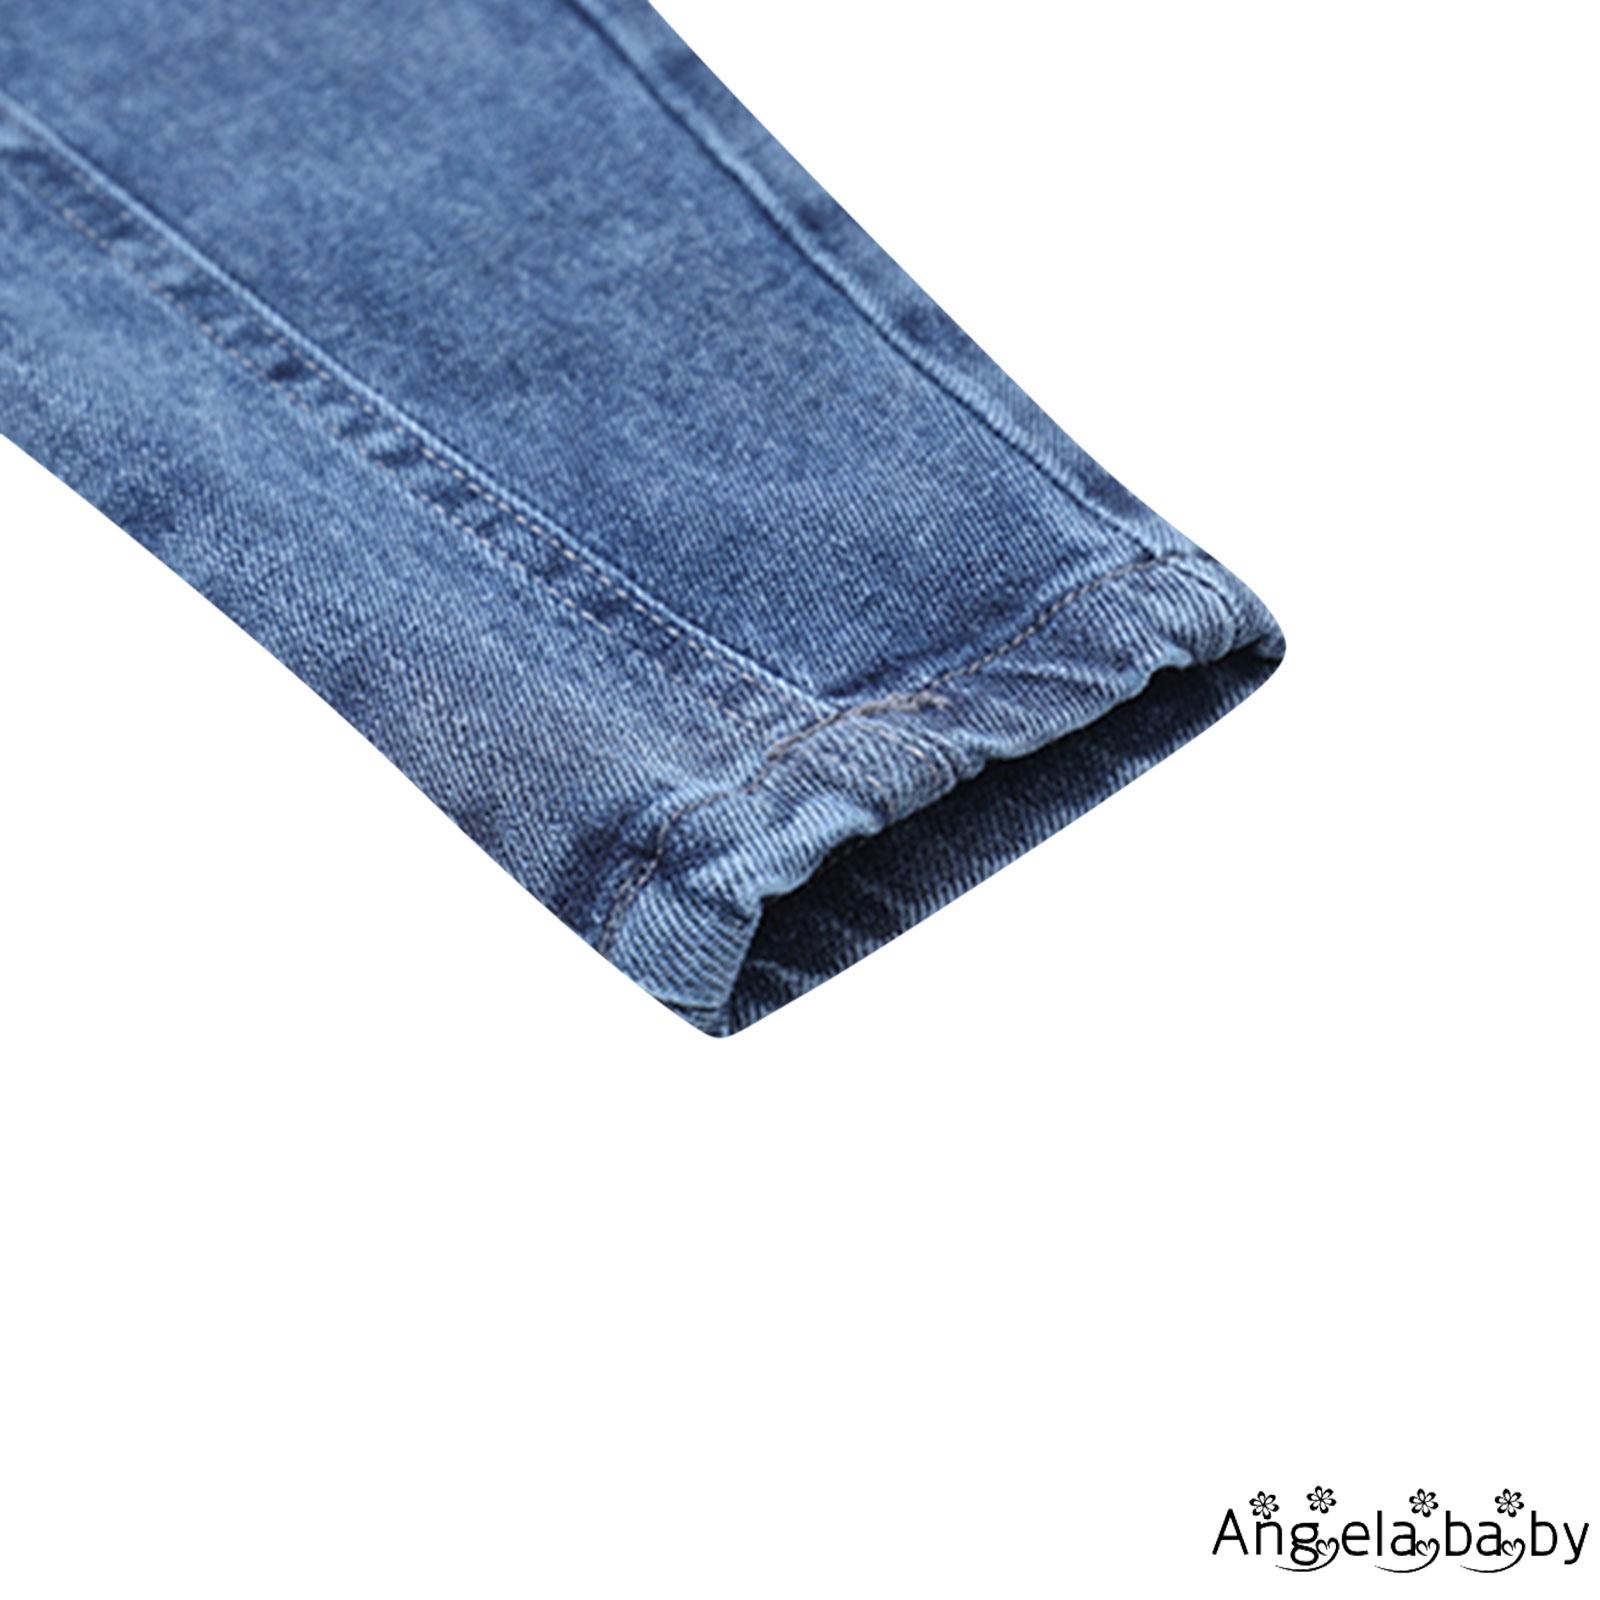 Quần Jeans Dài Lưng Thun Thời Trang Cho Bé